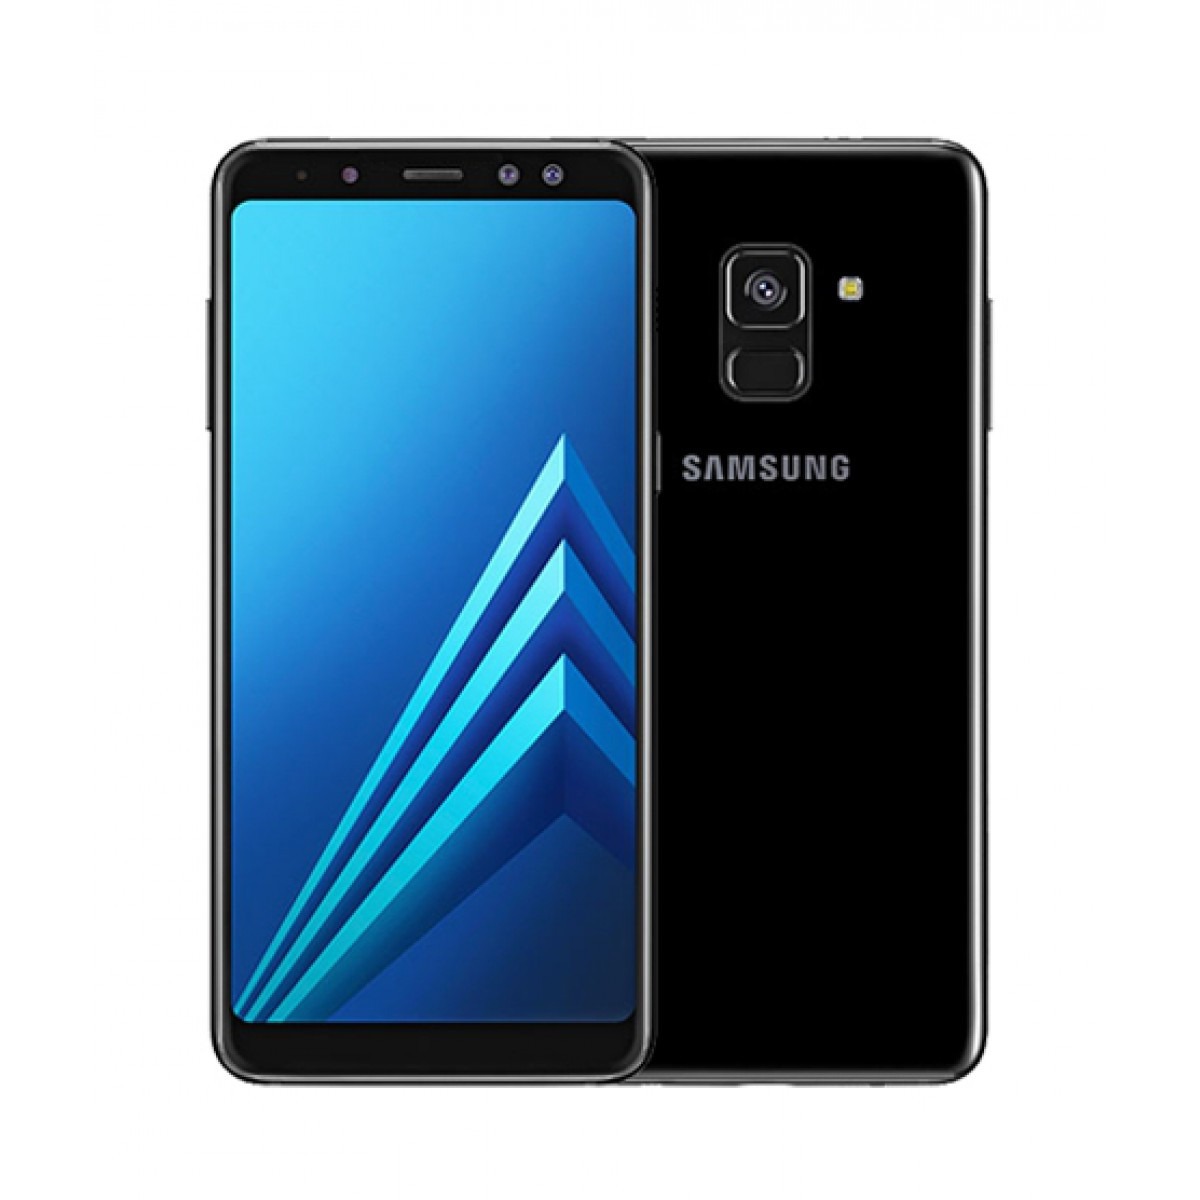 Galaxy A8 de Samsung tendría pantalla de 5.5″